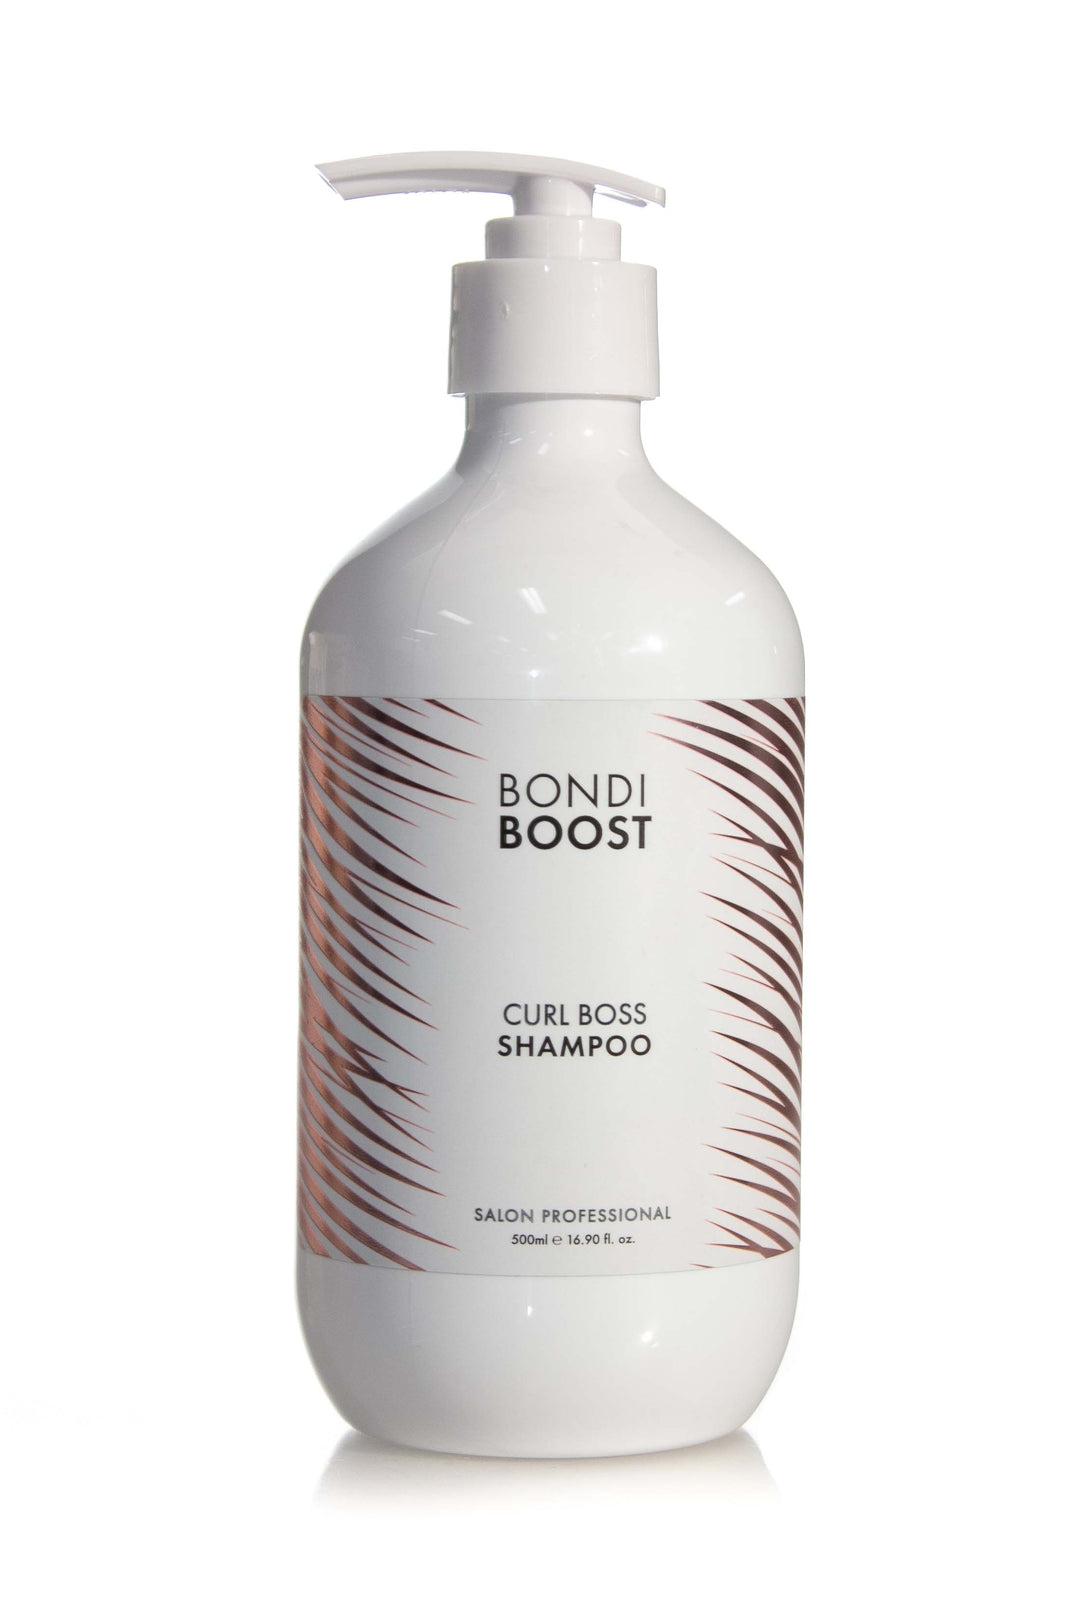 Bondi Boost Curl Boss Shampoo